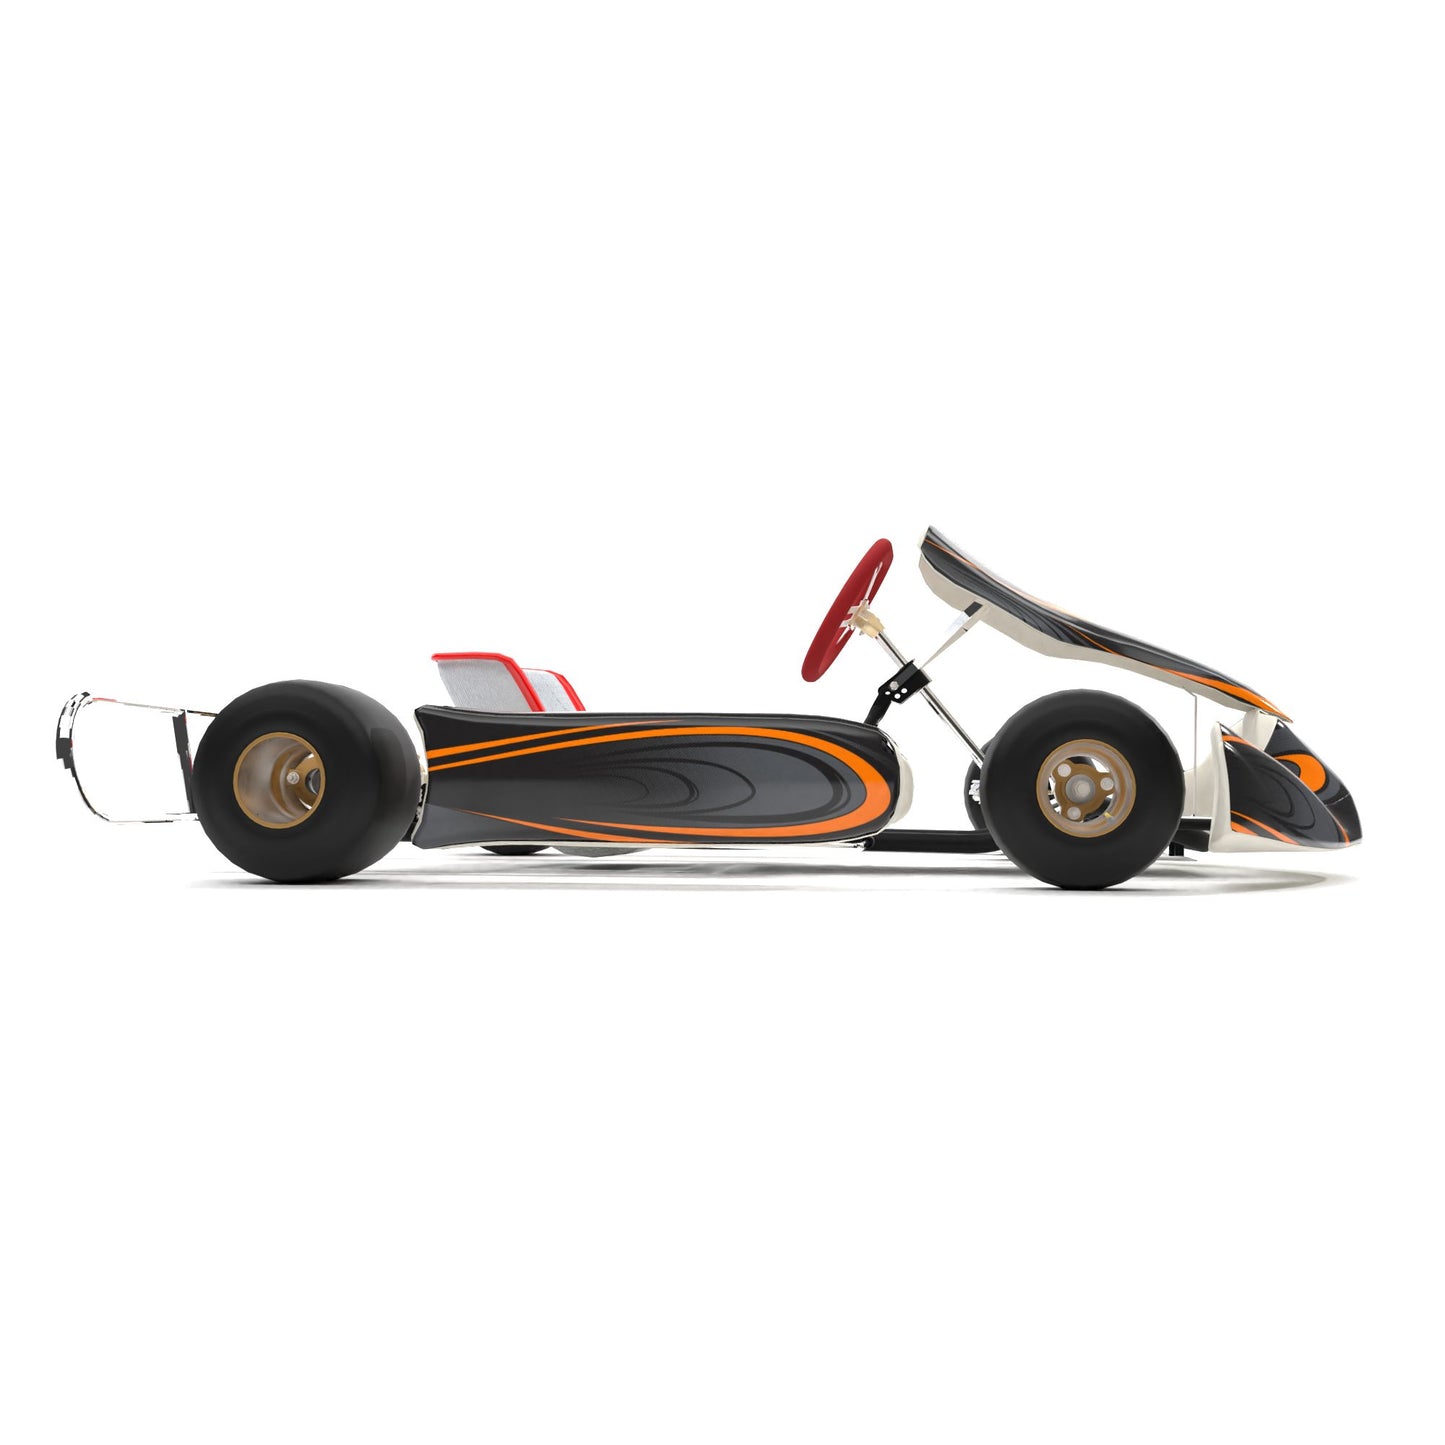 McLaren Inspired Kart Graphics Kit